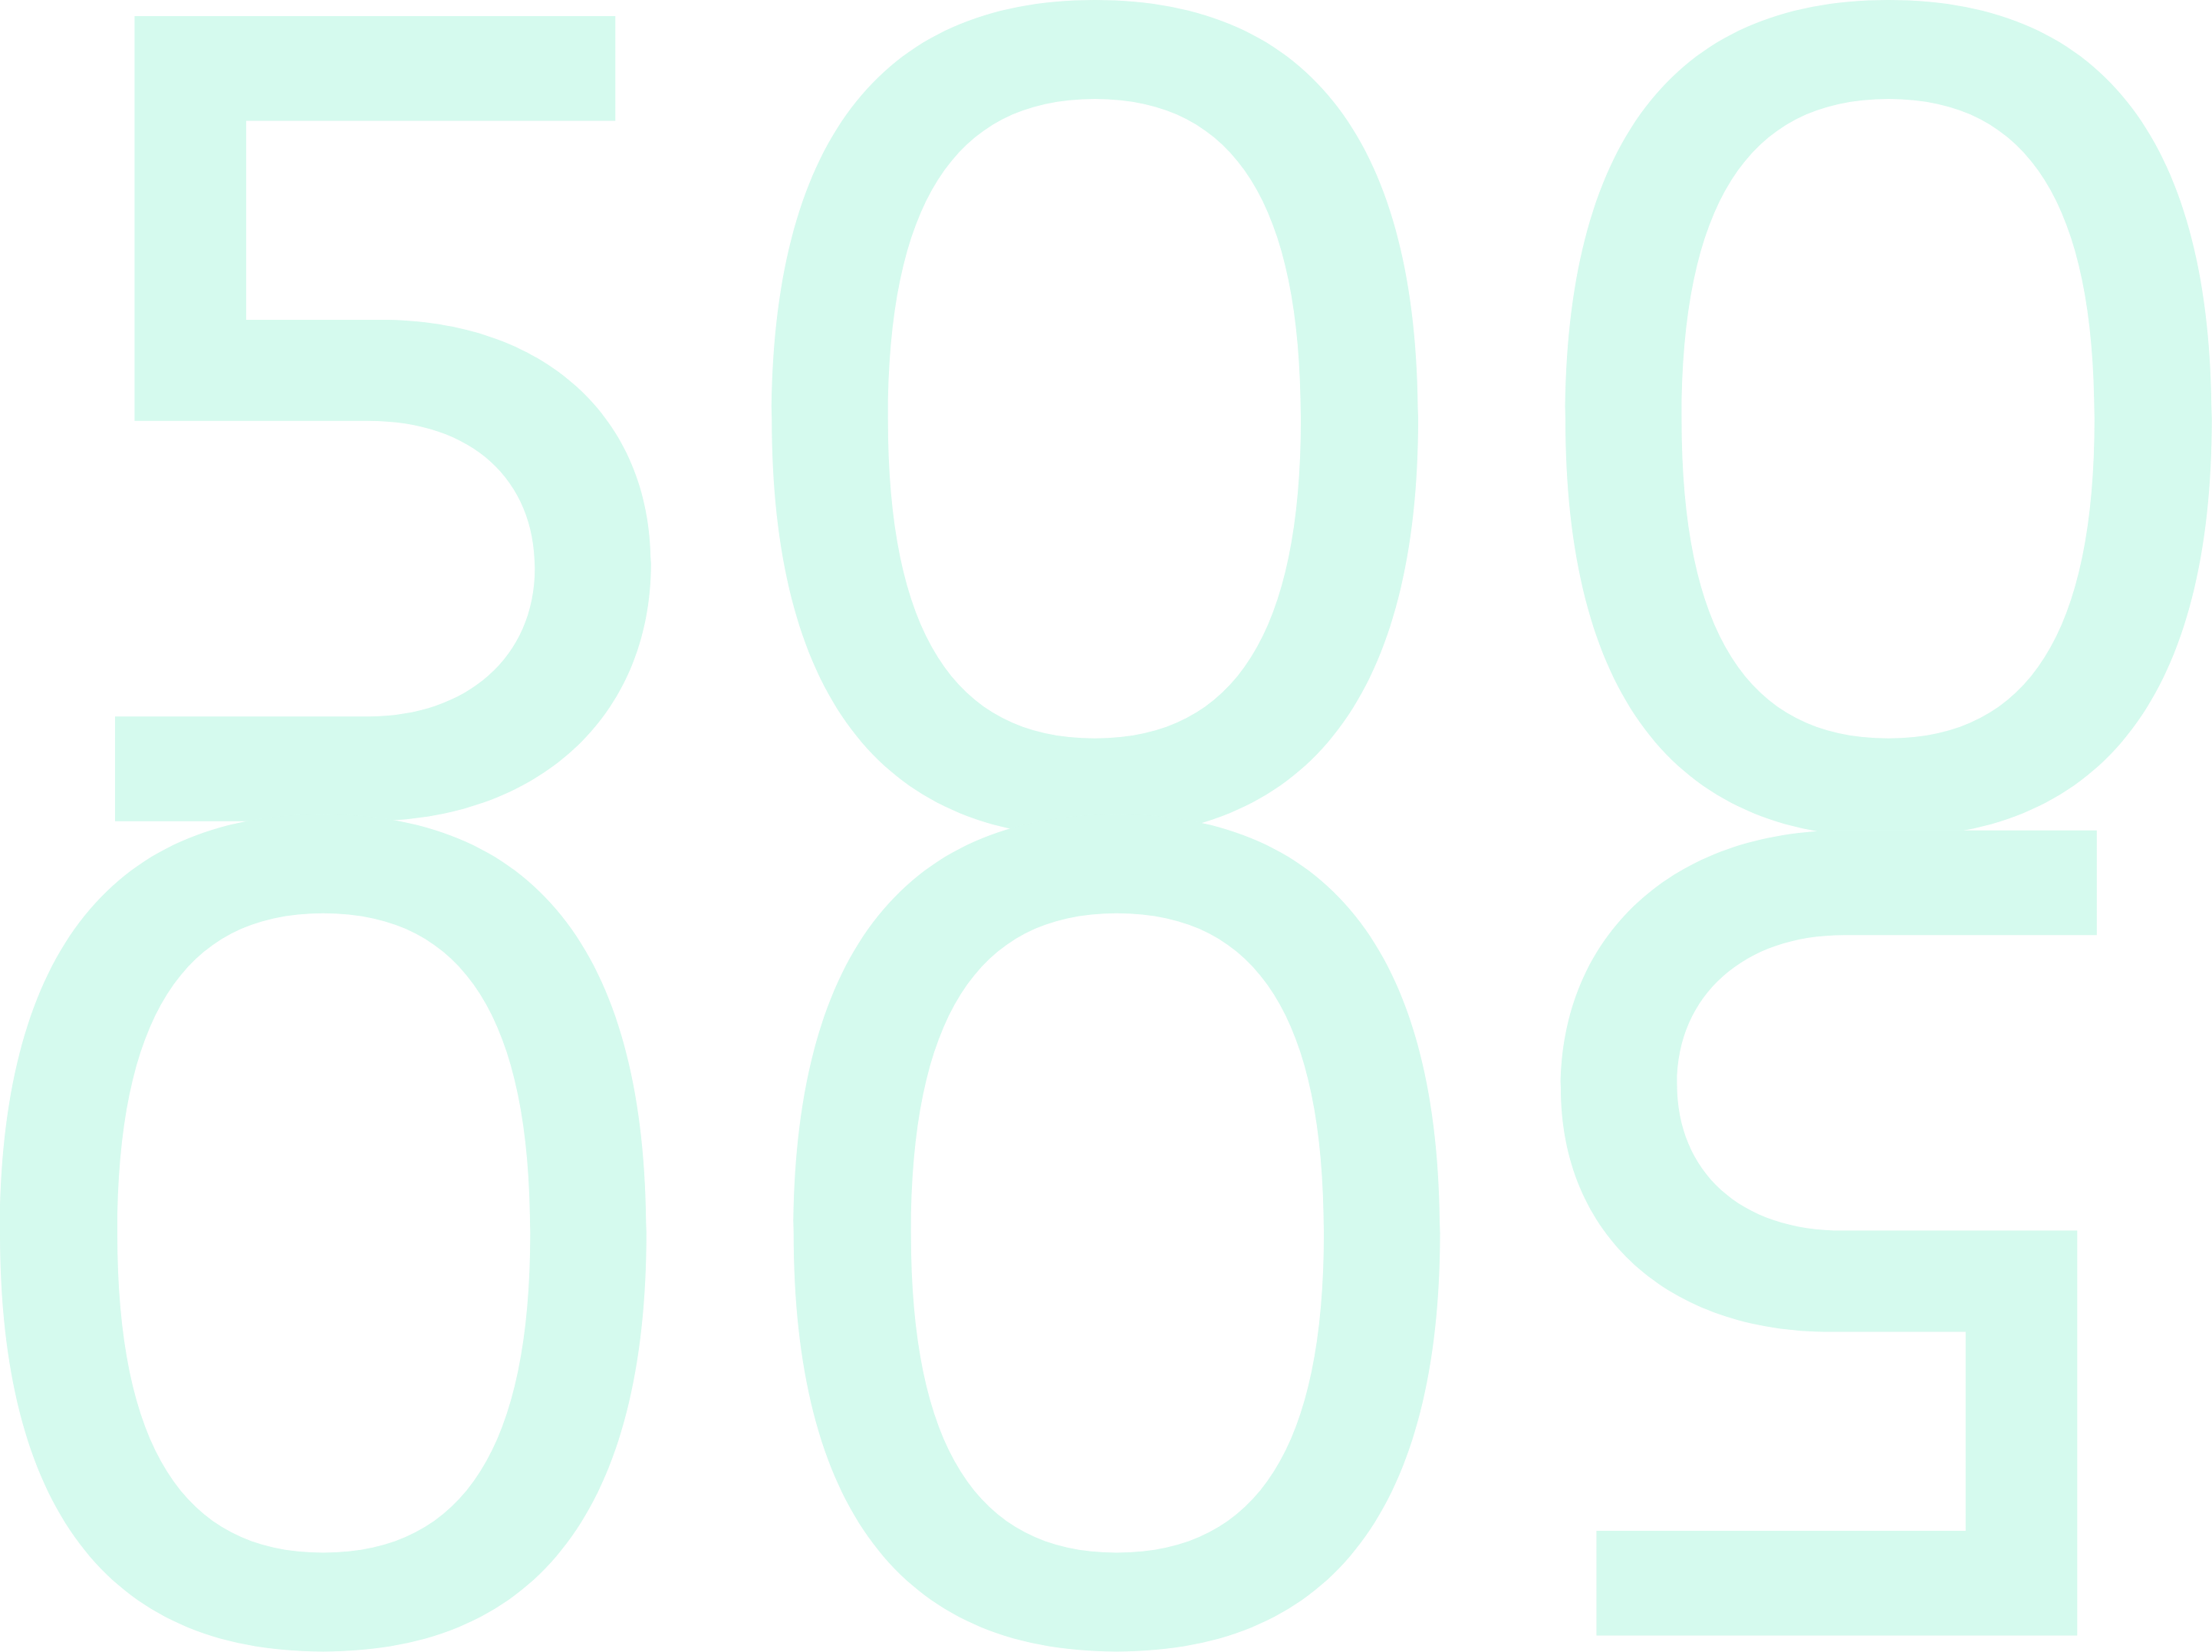 5004